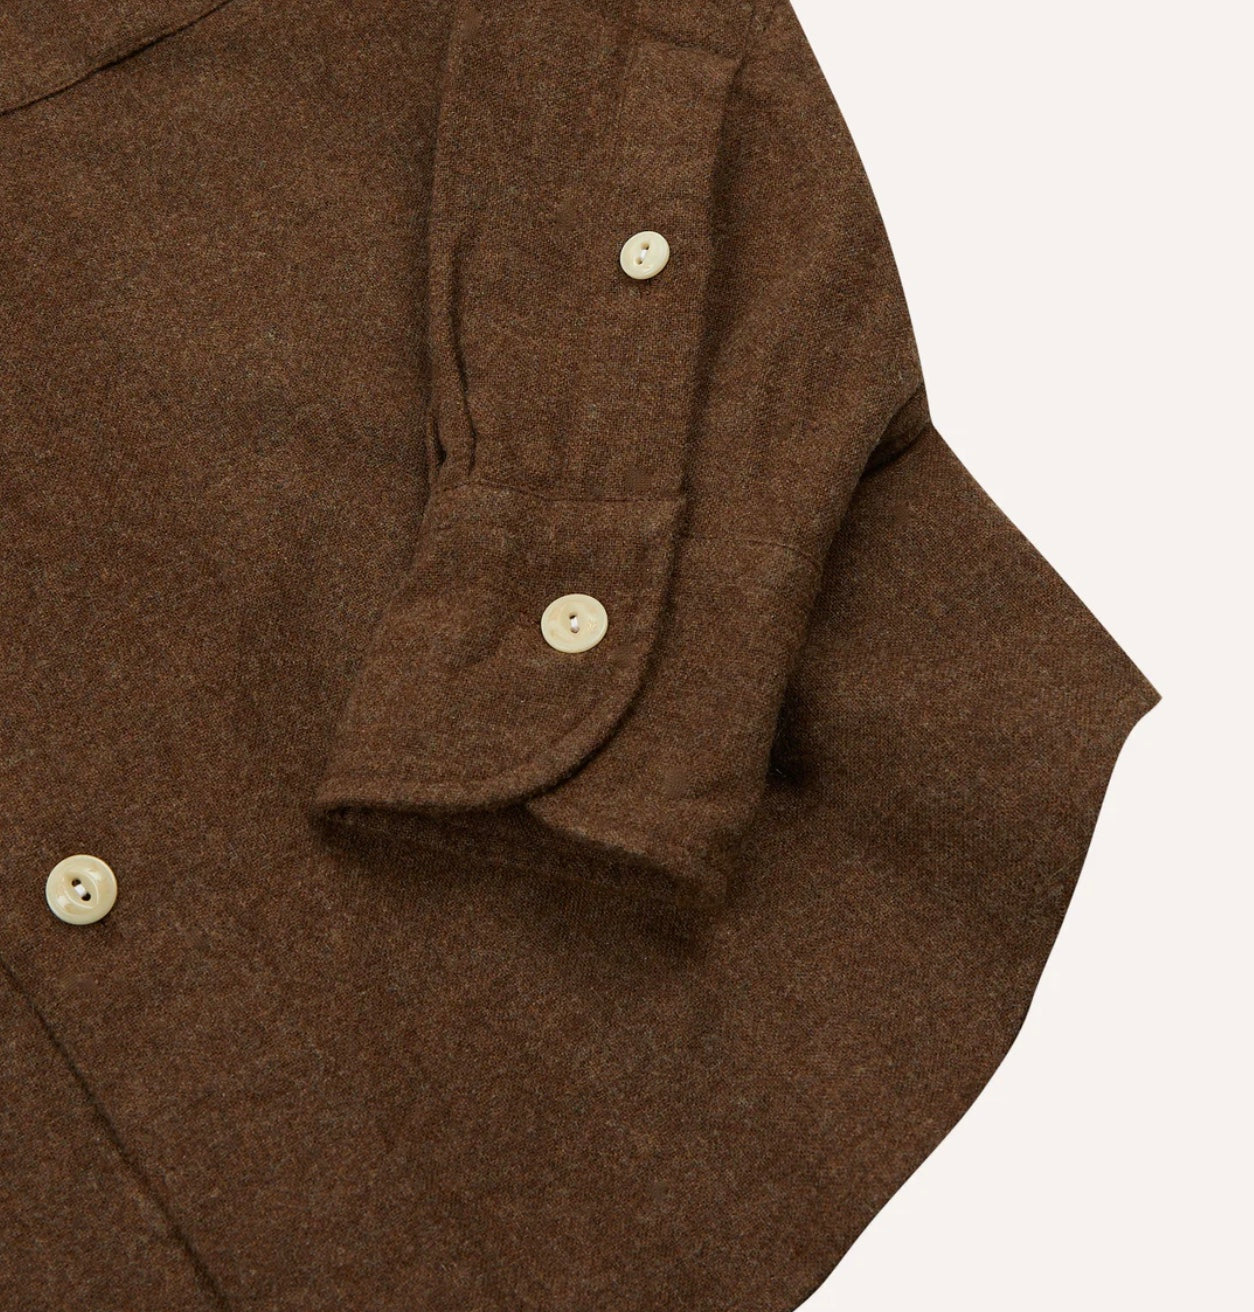 Drake's Brown Wool Two-Pocket Work Shirt – doherty evans & stott